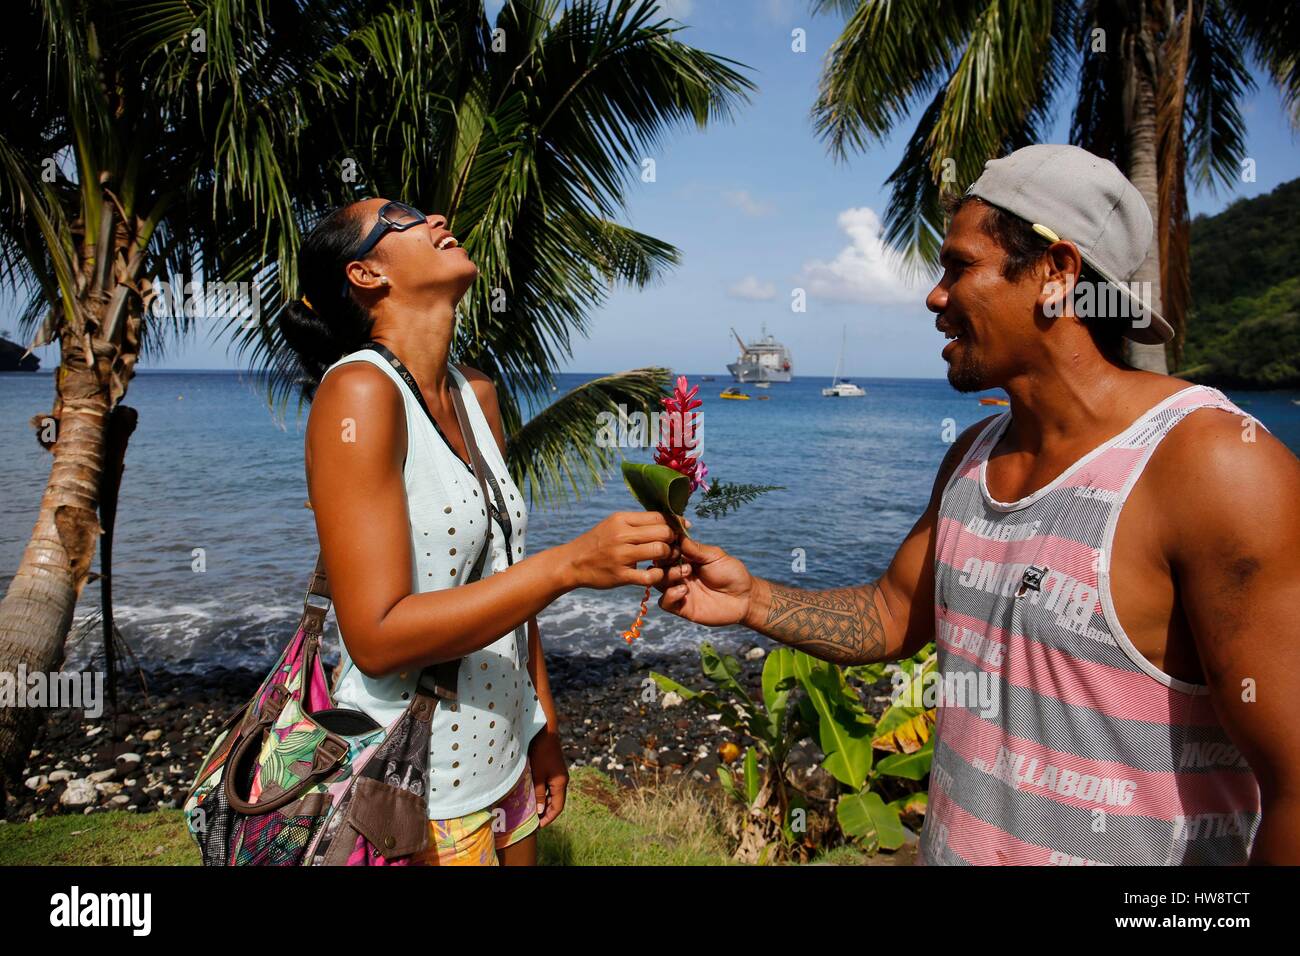 Frankreich, Französisch-Polynesien, Aranui 5 Frachter und Passagier Kreuzfahrtschiff zum Archipel der Marquesas-Inseln, Tahoata Insel, Dorf Vaitahu bietet eine Blume mit einer lachenden Frau Mann Stockfoto